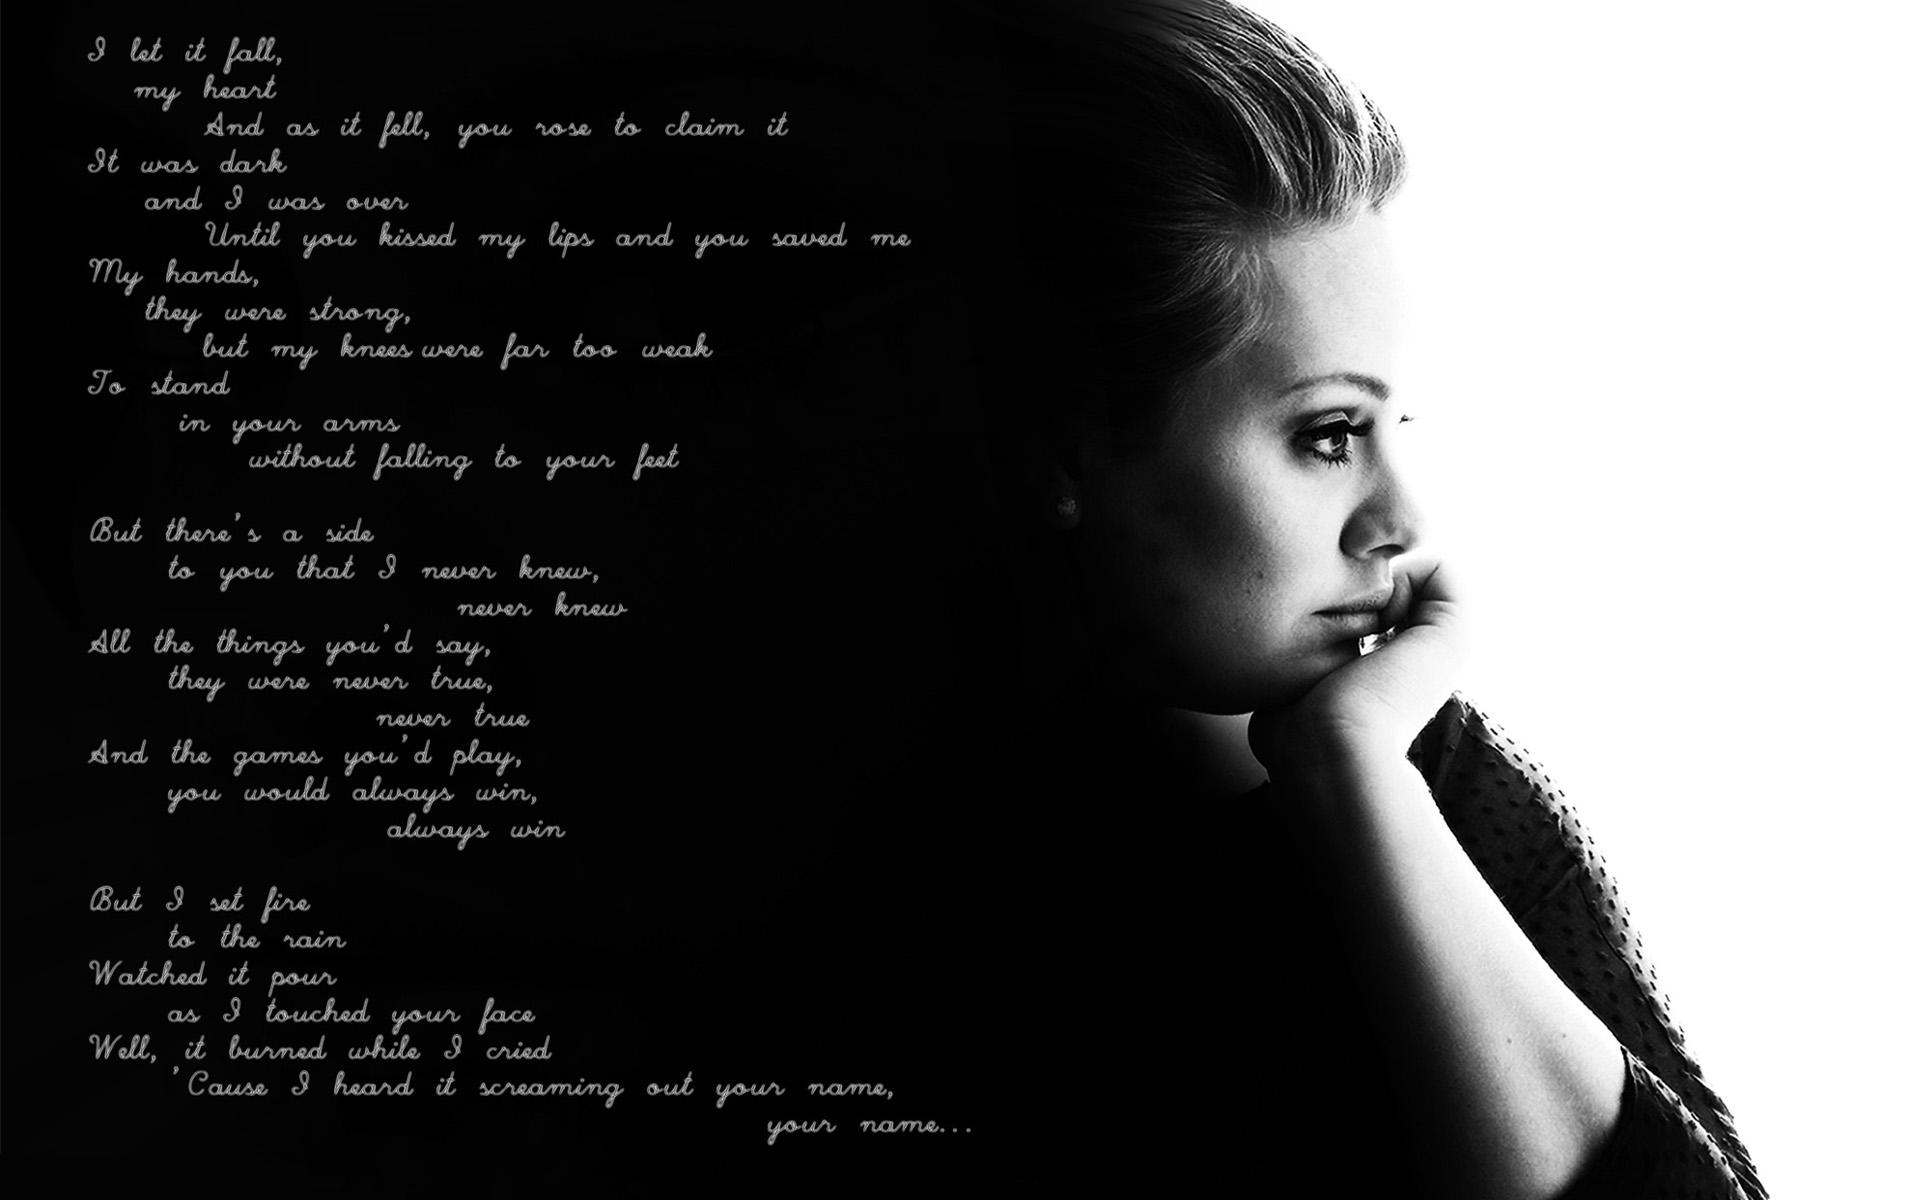 Adele background | Adele wallpaper, Adele music, Adele photos